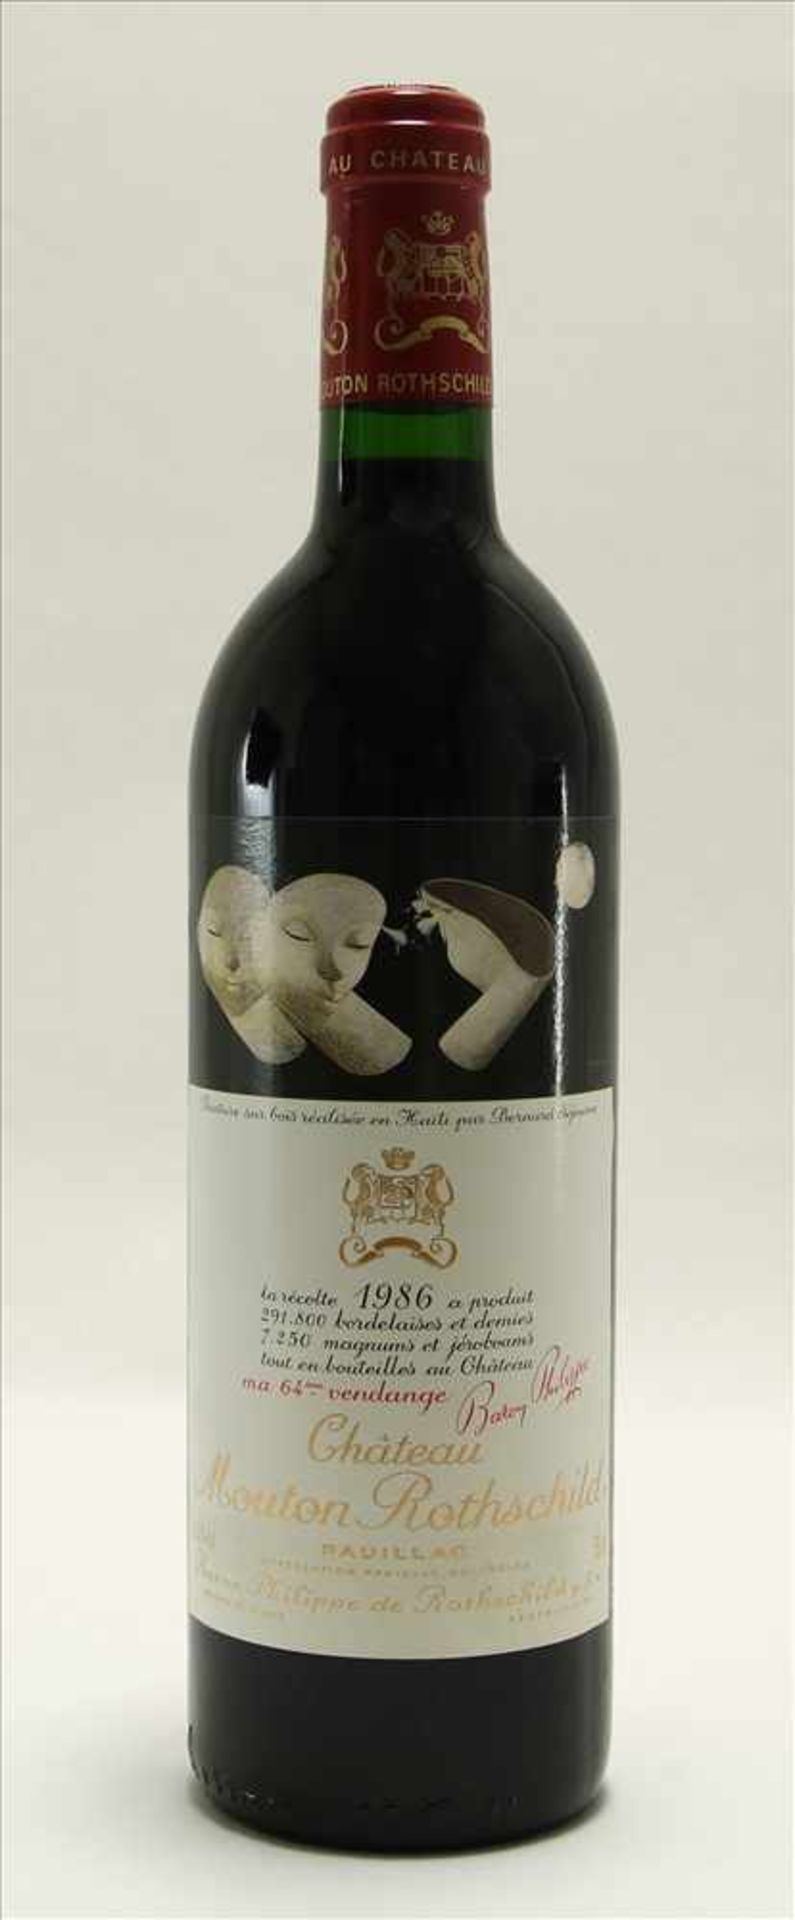 Flasche Chateau Mouton Rothschild 1986Pauillac, 0,75 Liter mit dem originalen Etikett von Bernard